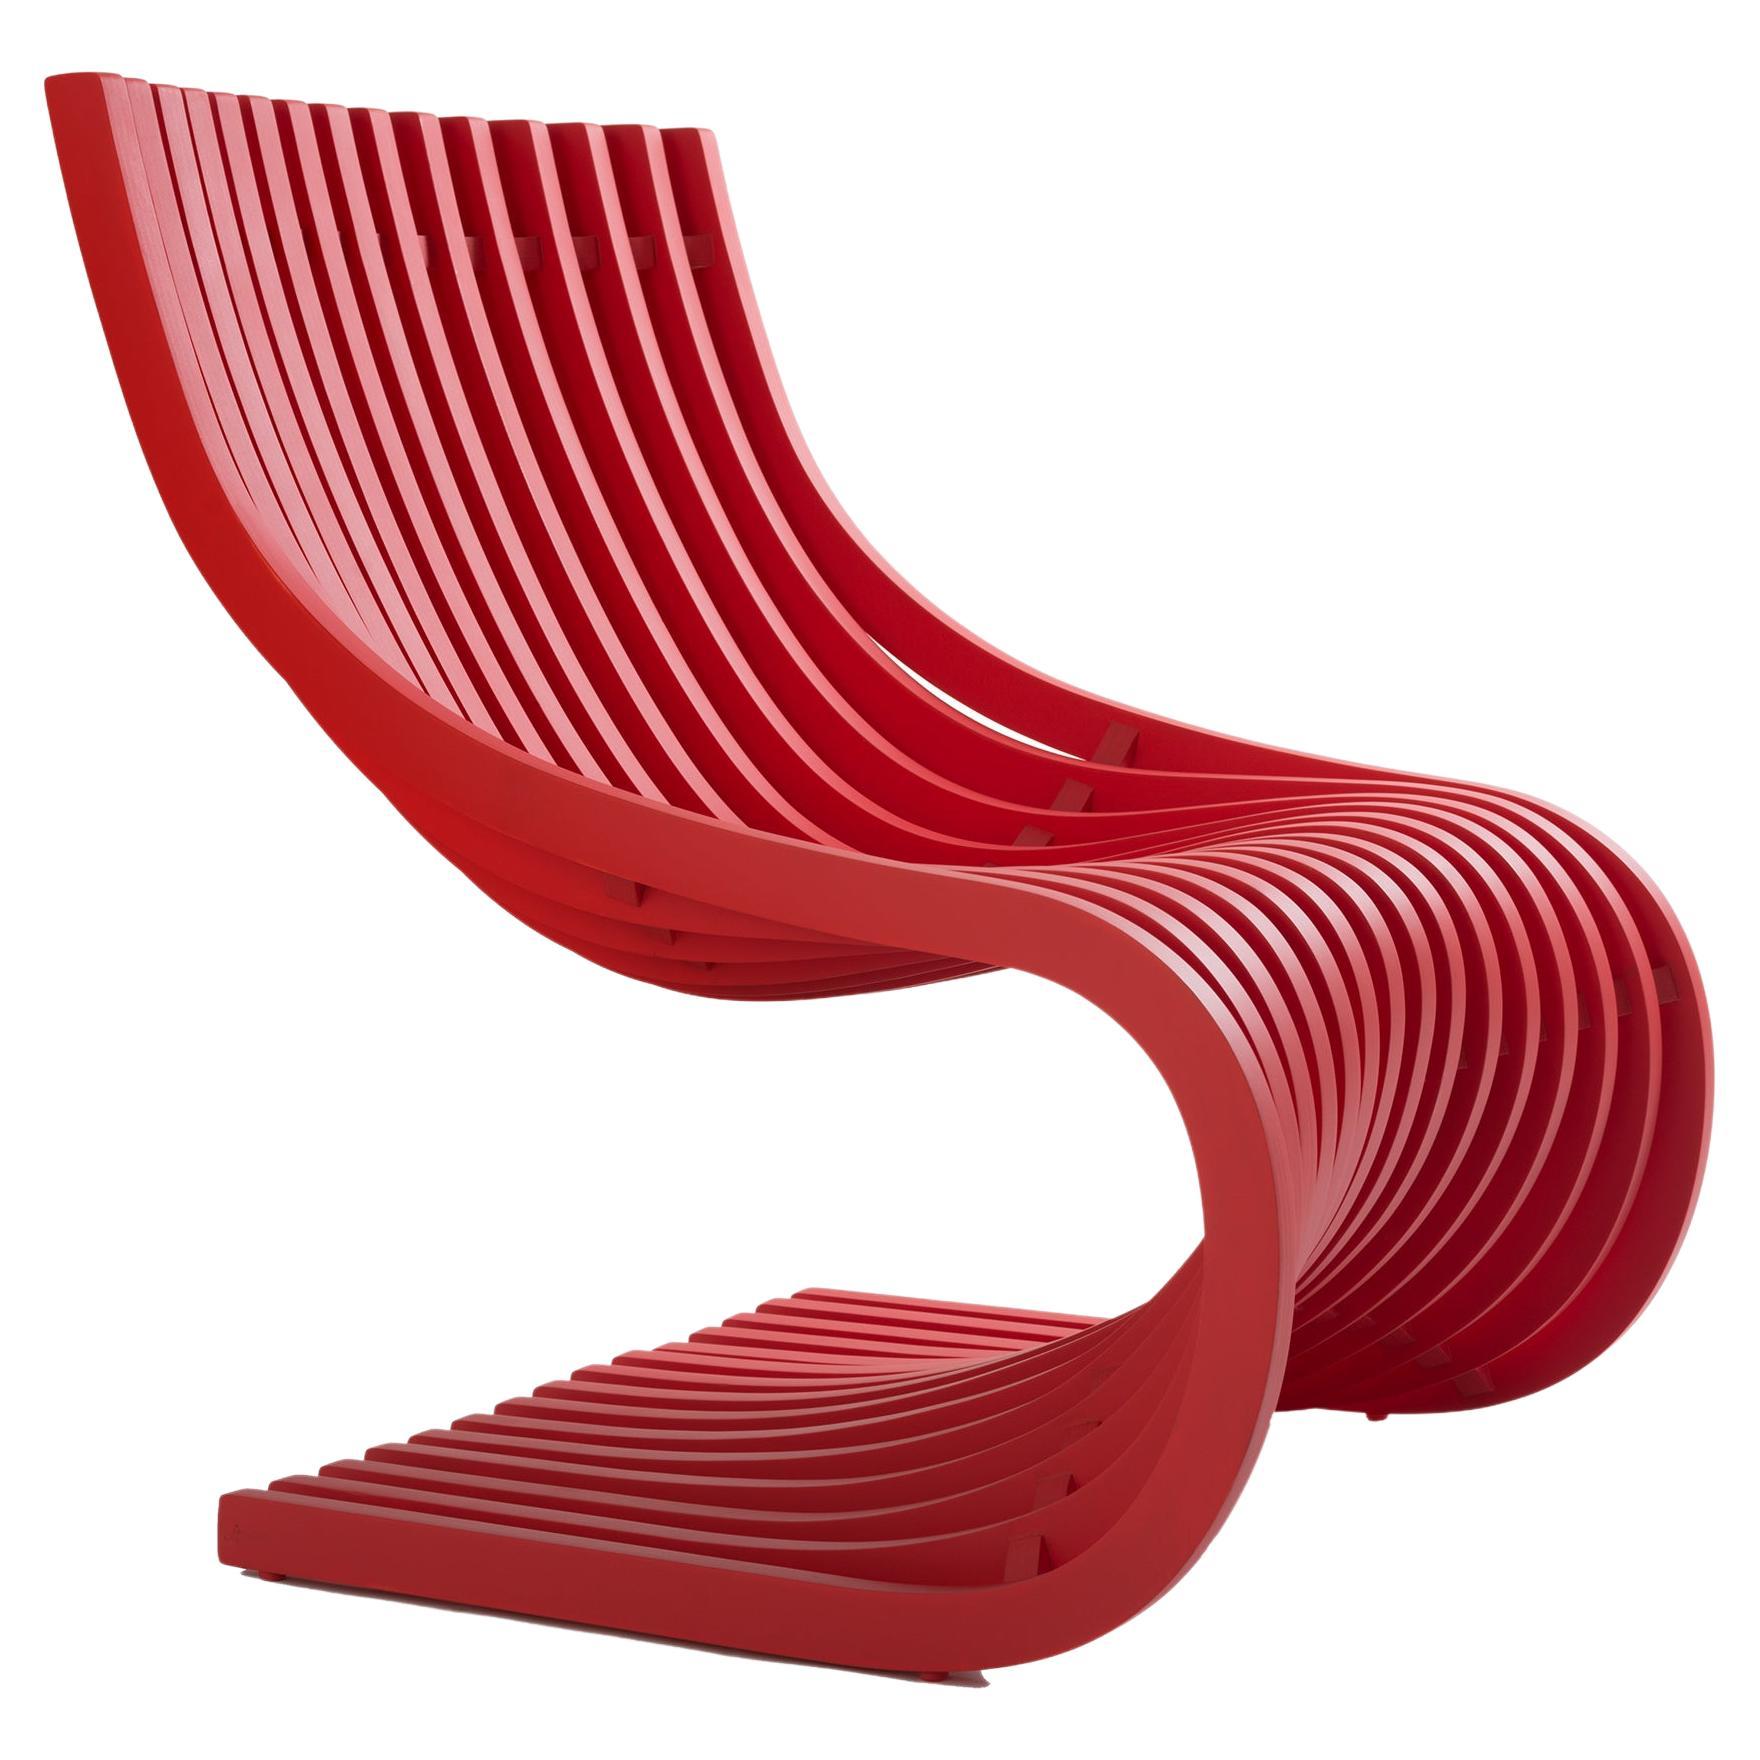 Double S-Stuhl von Piegatto, ein skulpturaler zeitgenössischer Stuhl